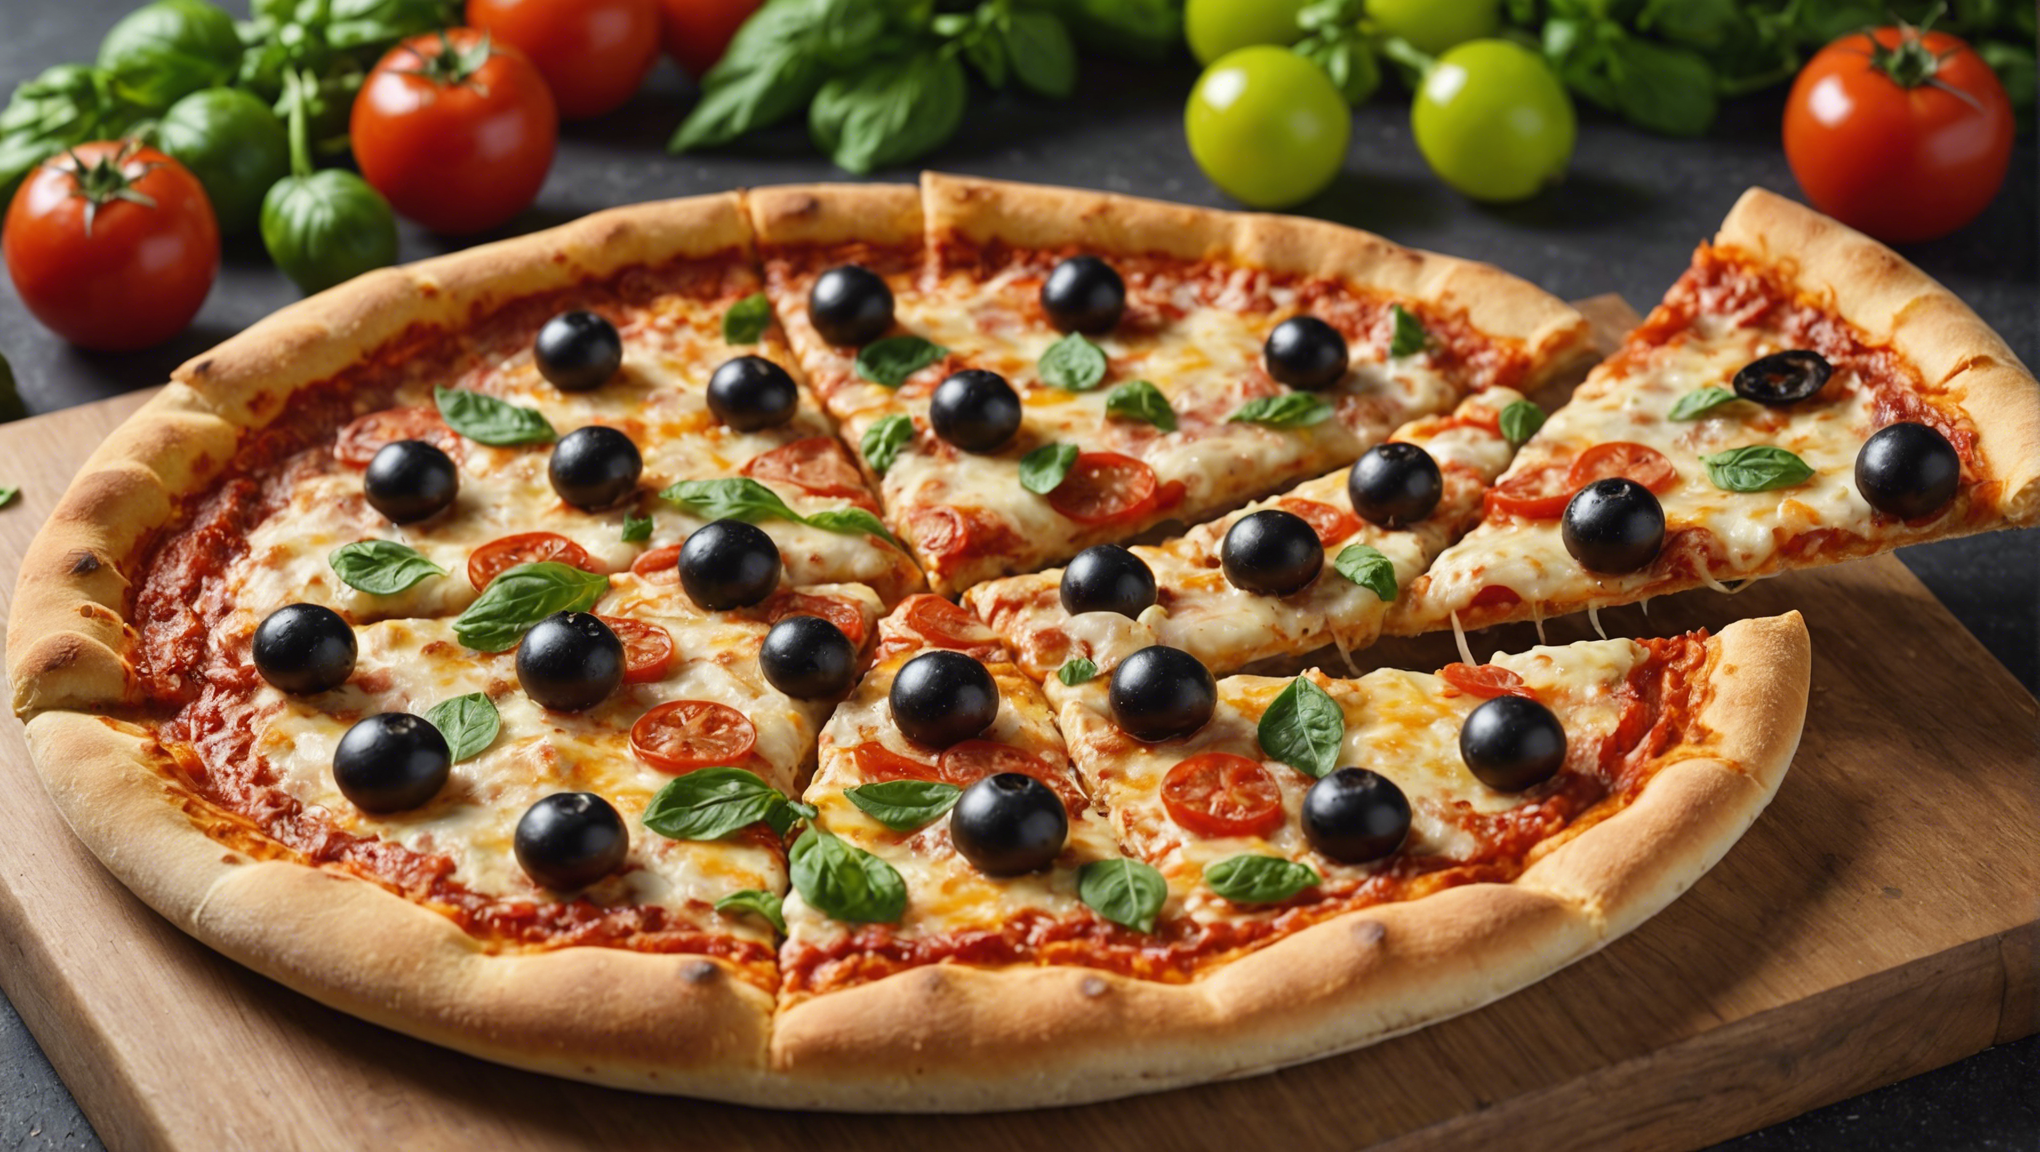 découvrez le dernier modèle de four à pizza de chez lidl pour savourer les meilleures pizzas chez vous !